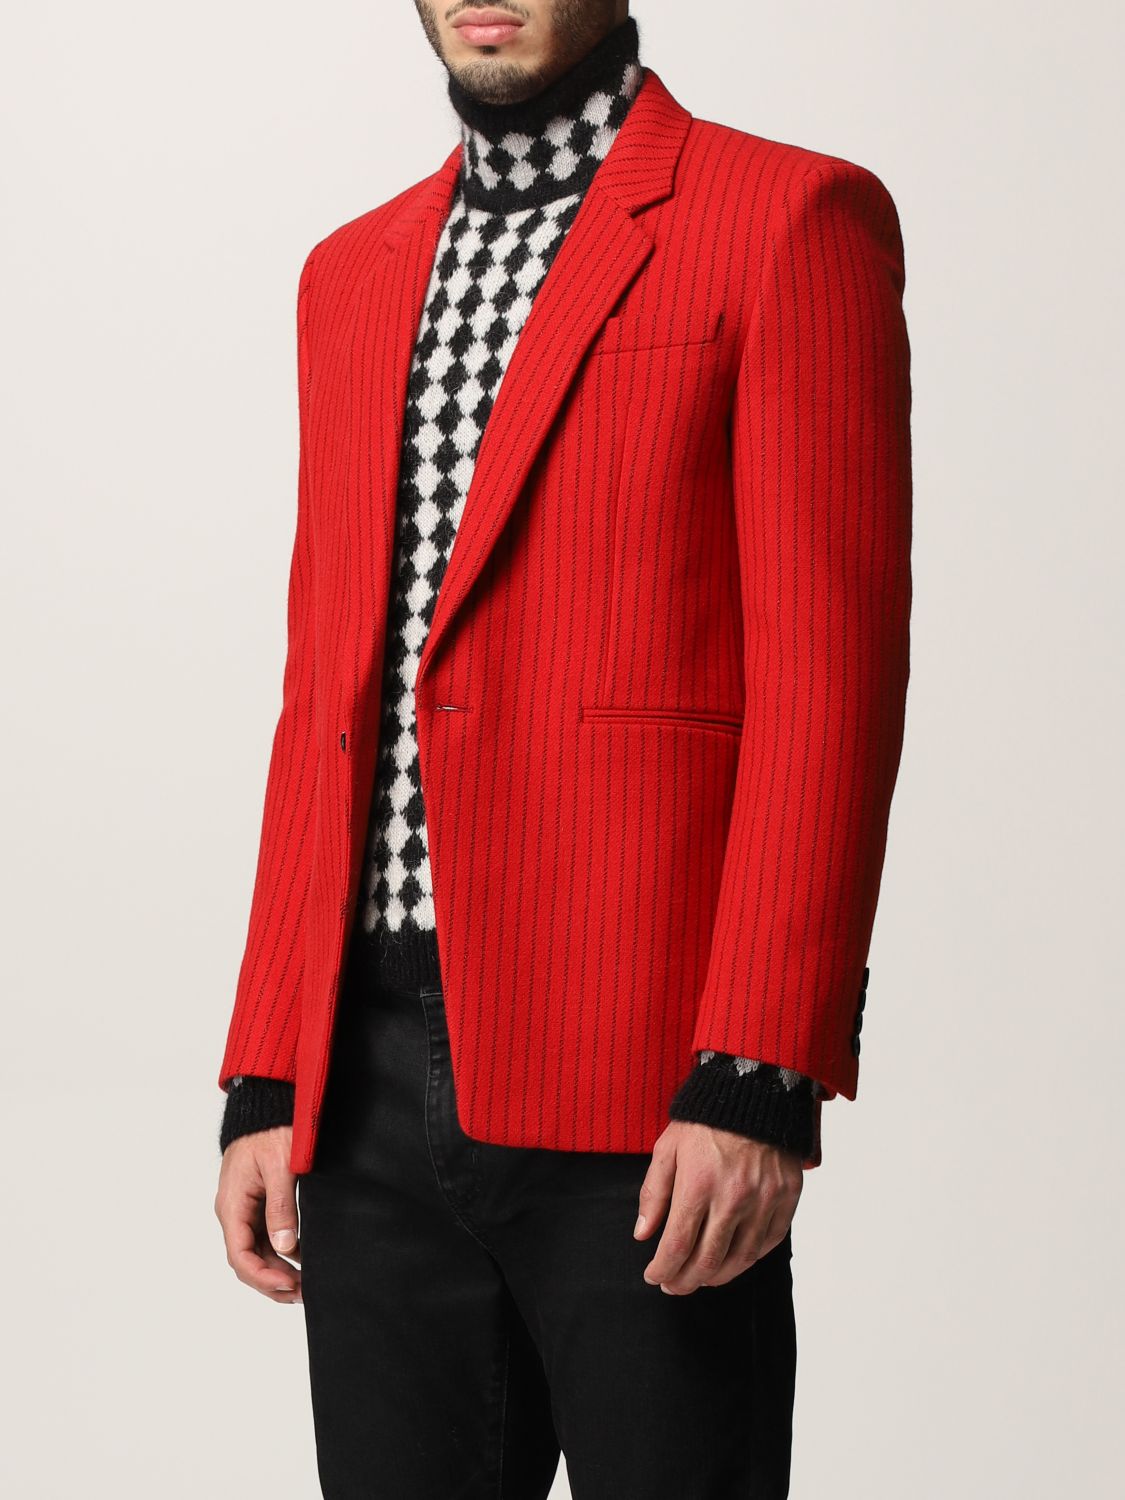 SAINT LAURENT: blazer for man - Red | Saint Laurent blazer 660071 Y2D20 ...